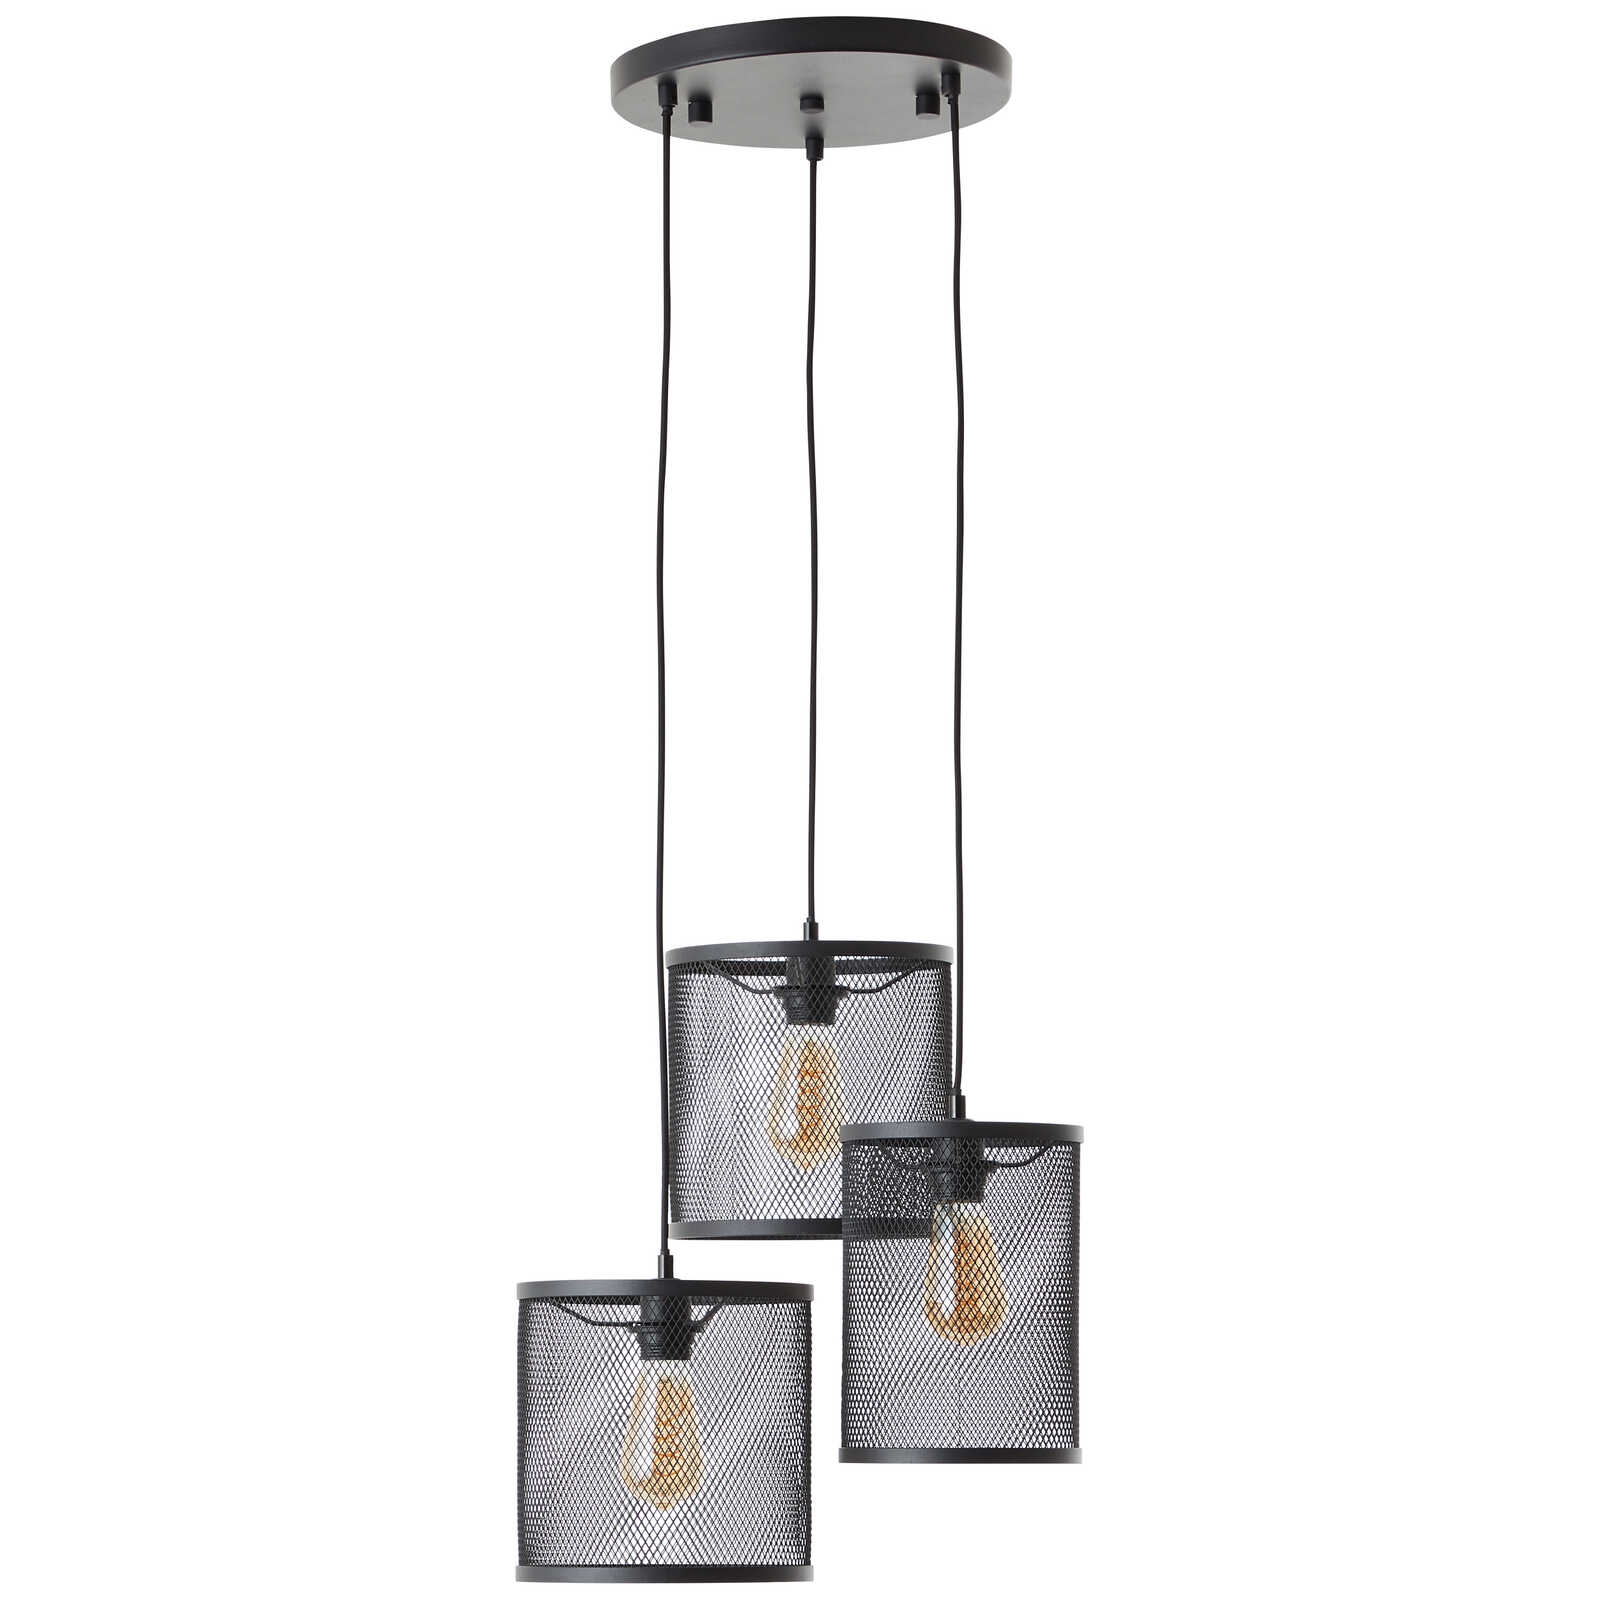             Metalen hanglamp - Levi 4 - Goud
        